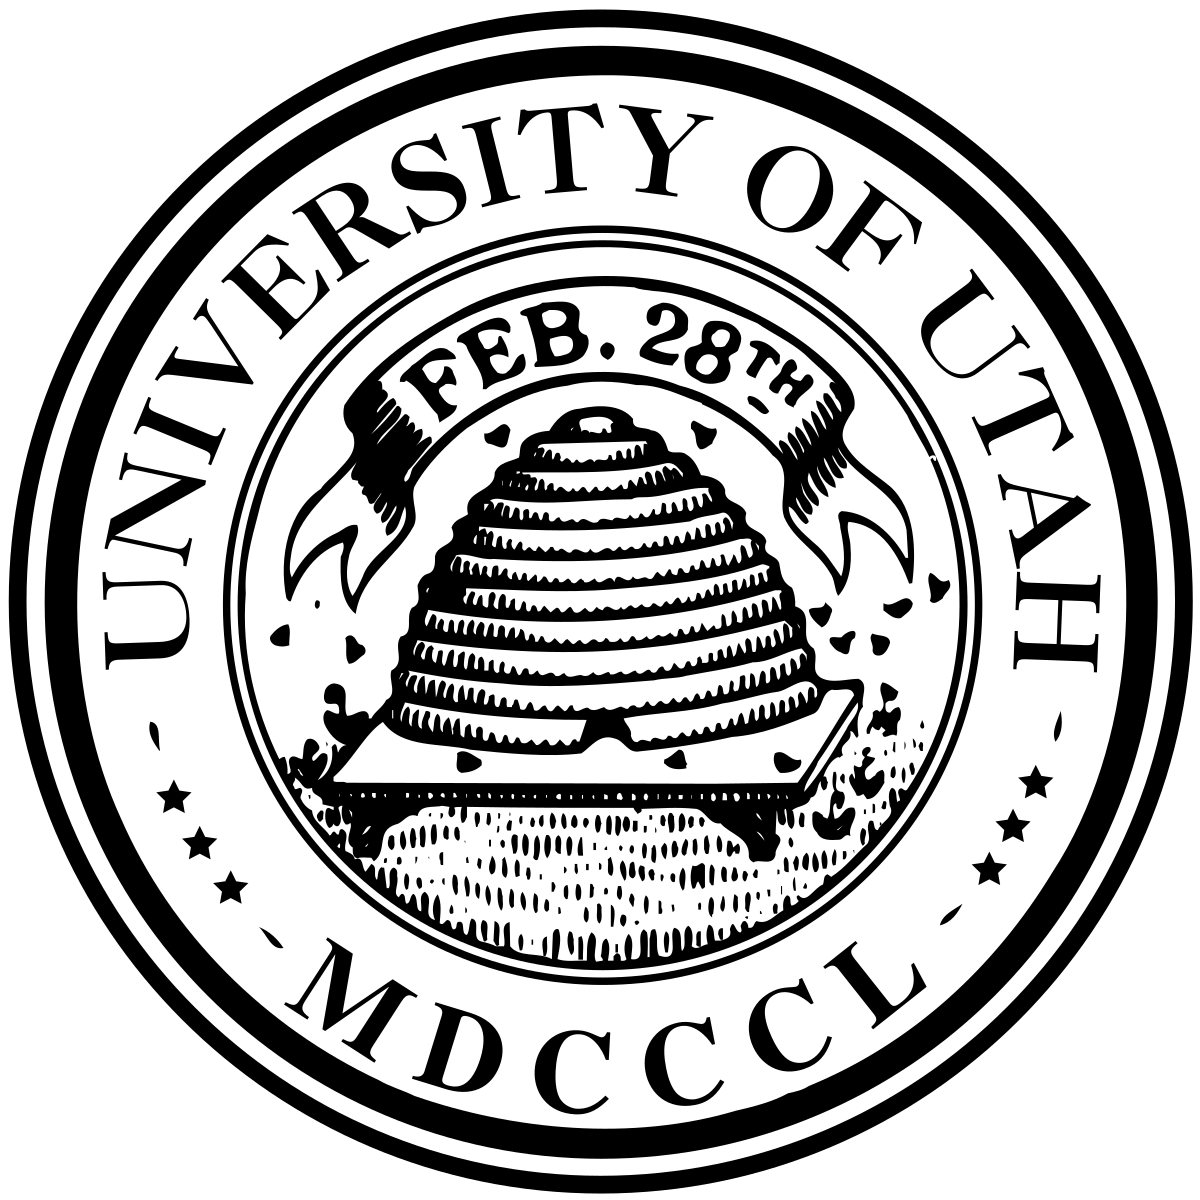 University of Utah Football Logo - University of Utah